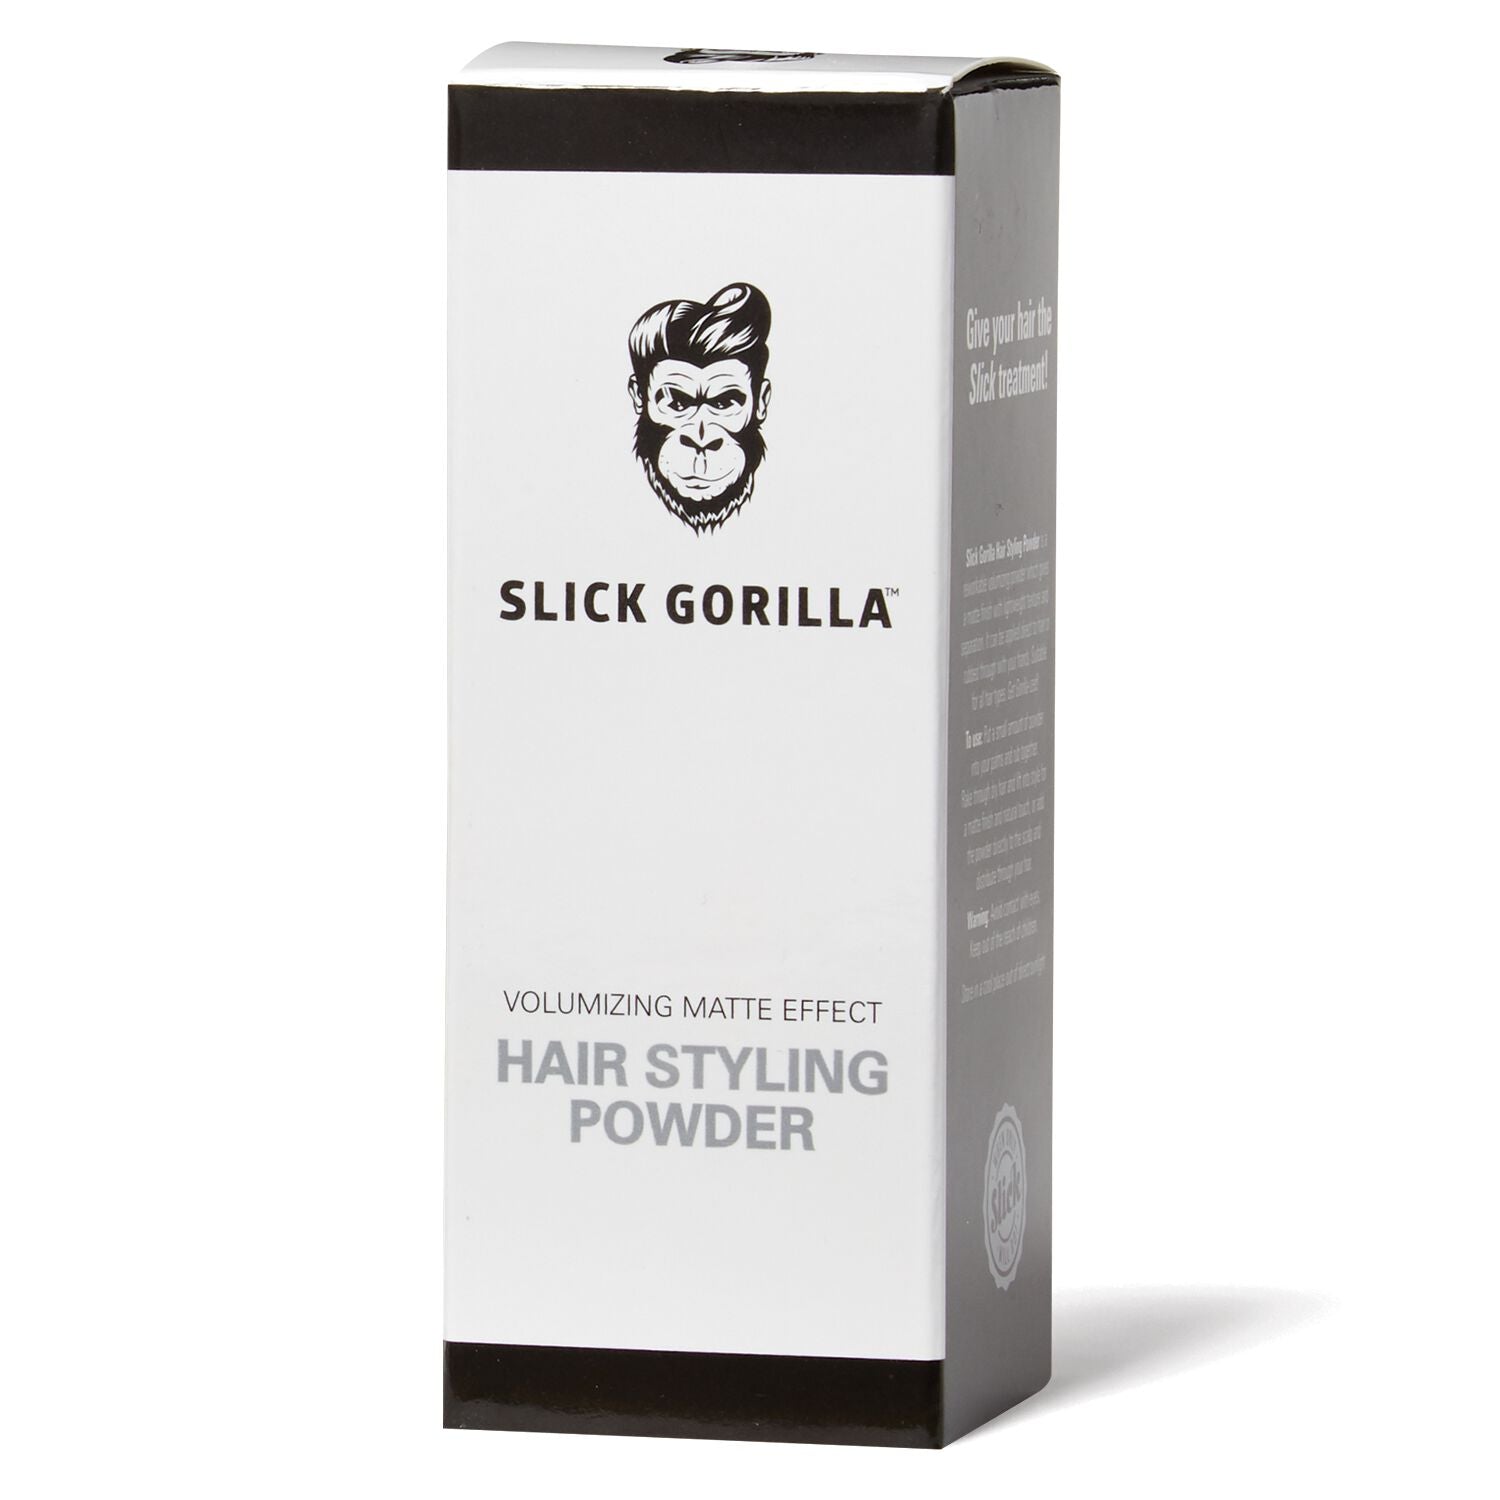 Slick Gorilla Hair Styling Powder - YouTube